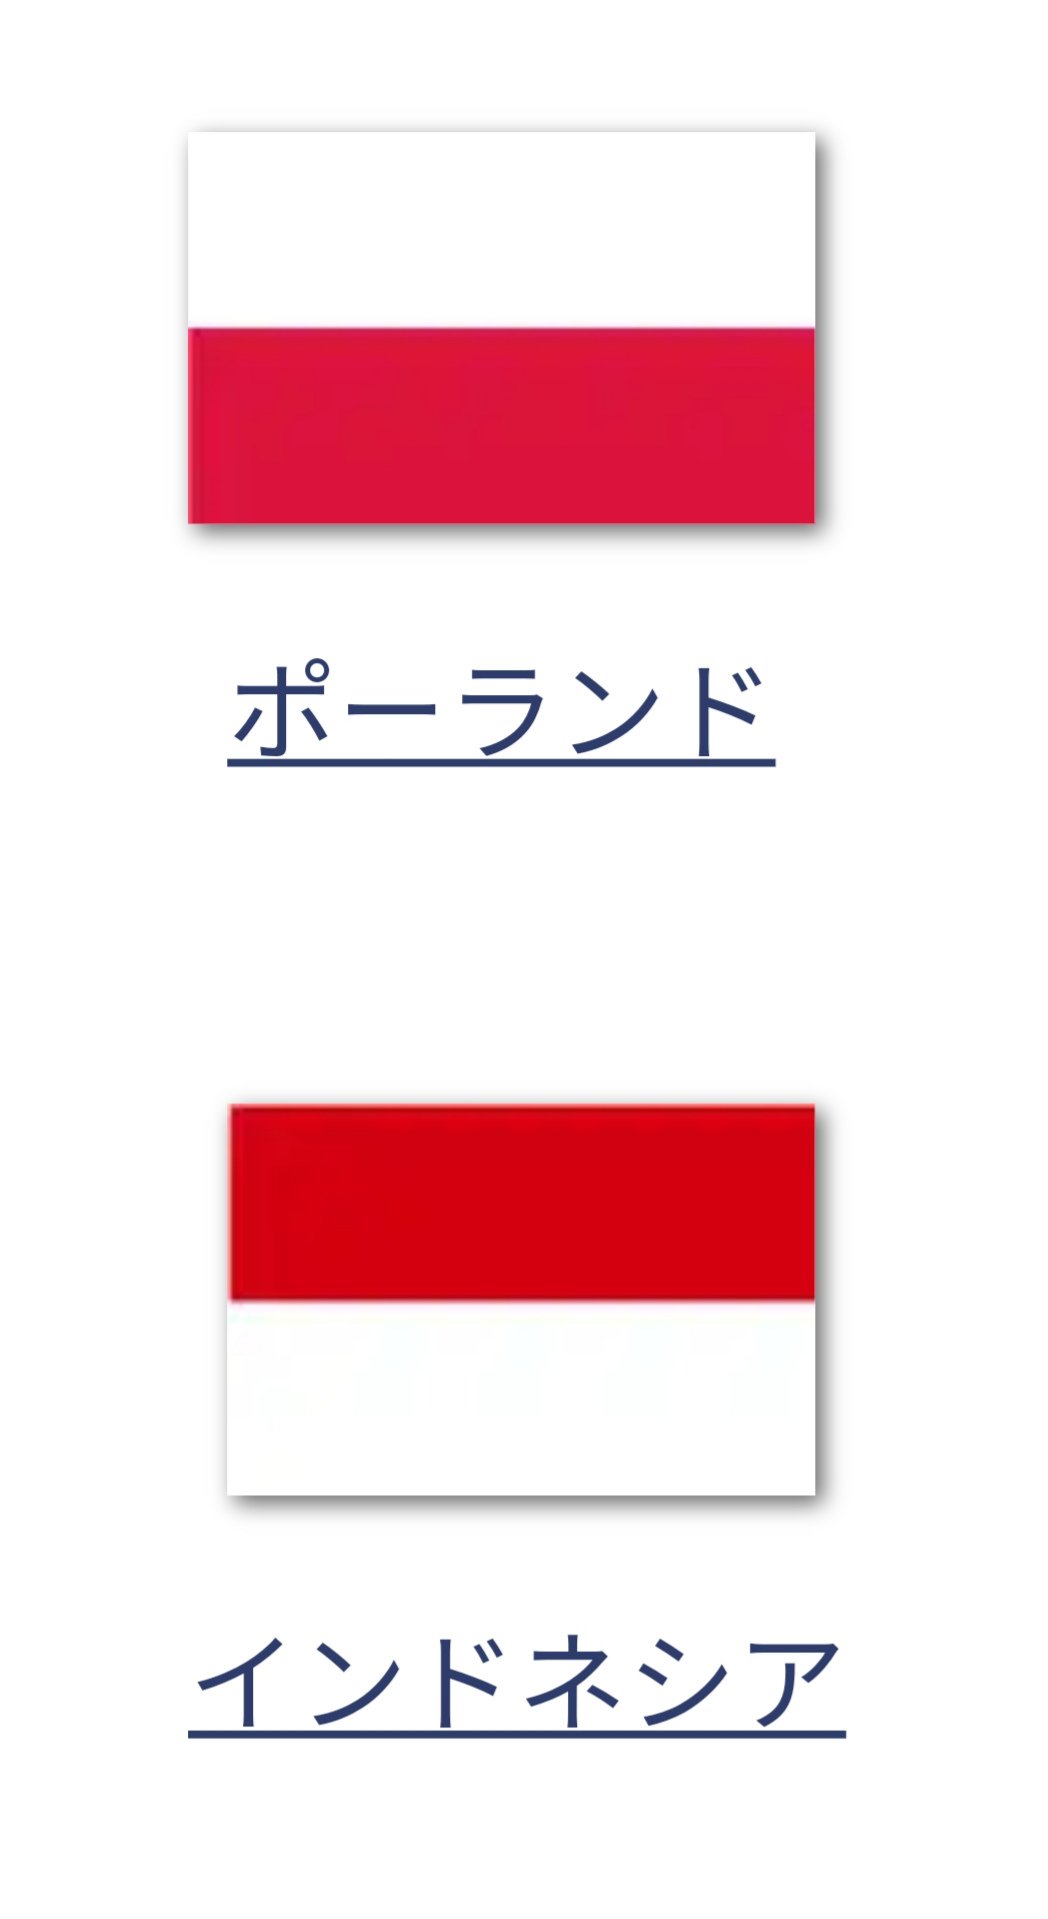 プリ村 ジュリアン 今日は日本代表戦があるからか 飲み屋で W杯観戦できます っていう紙が掲げられてるところが多い 時折 Wordで作ったと思われる対戦国であるポーランドの国旗が上下逆にデザインされちゃってインドネシア国旗 上半分が赤 下半分が